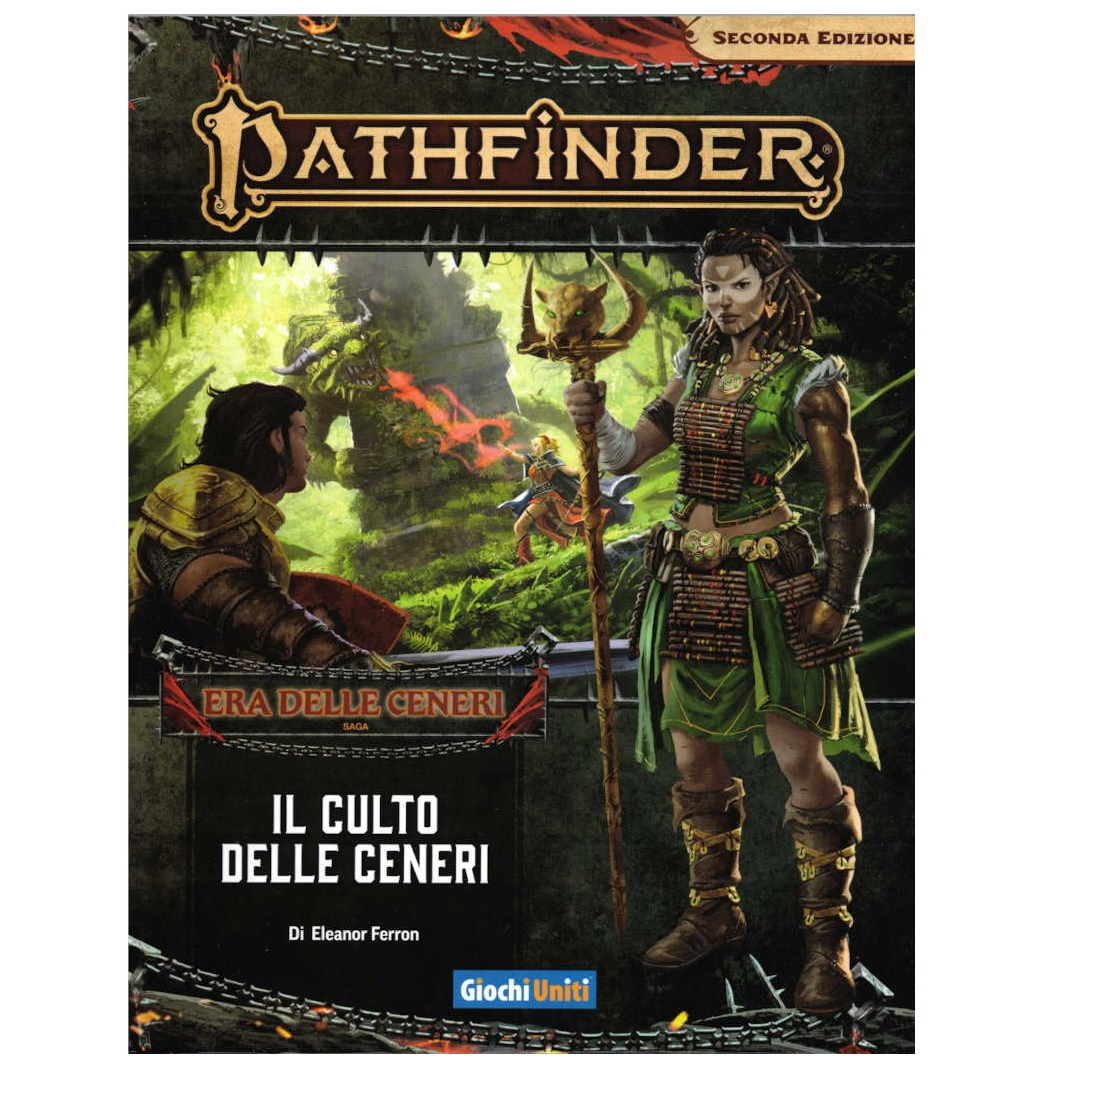 Pathfinder 2 - Il Culto delle Ceneri #2